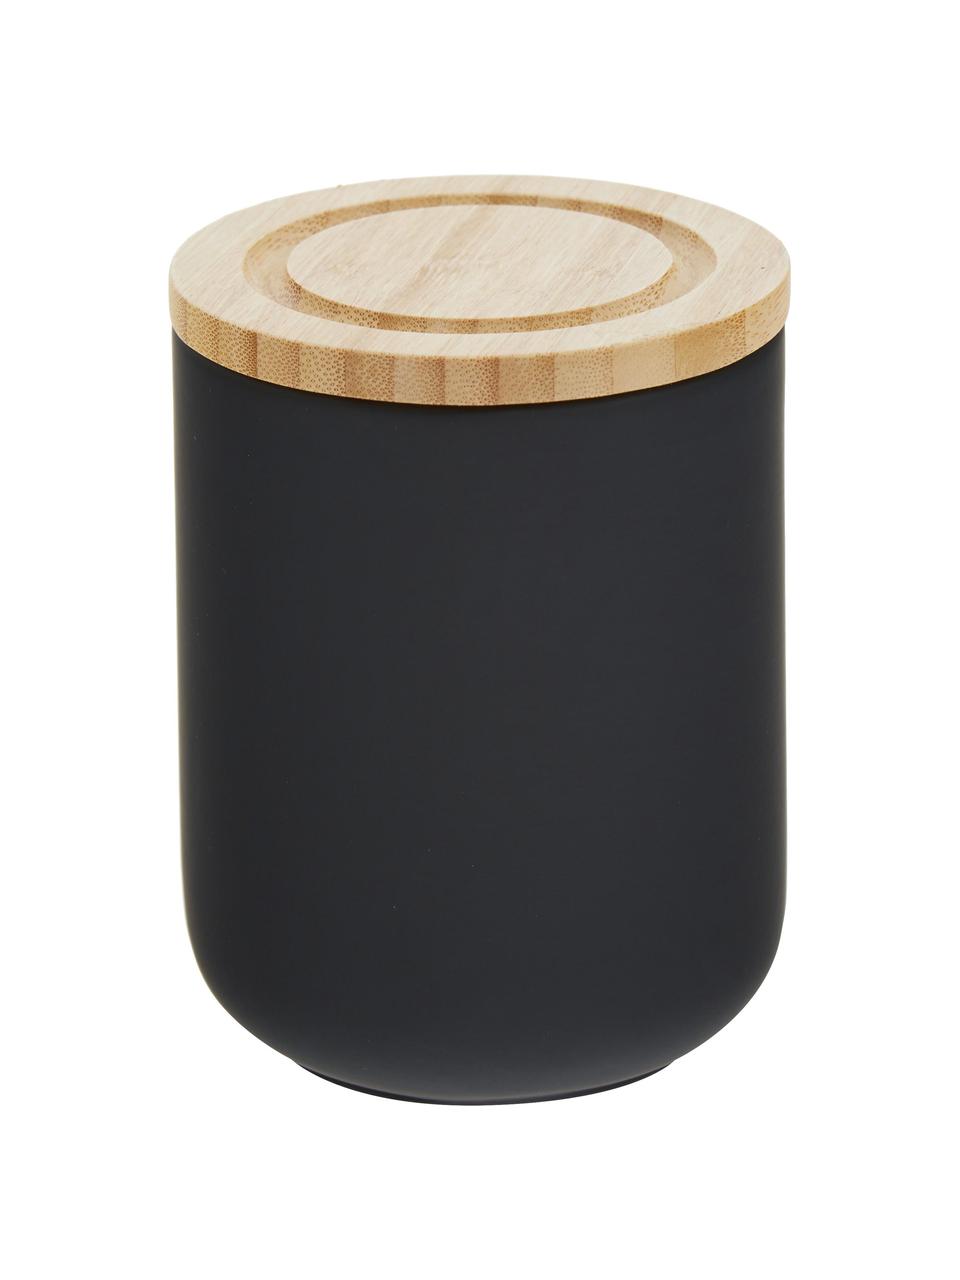 Opbergpot Stak, Pot: keramiek, Deksel: bamboehout, Zwart, bamboehoutkleurig, Ø 10 x H 13 cm, 750 ml